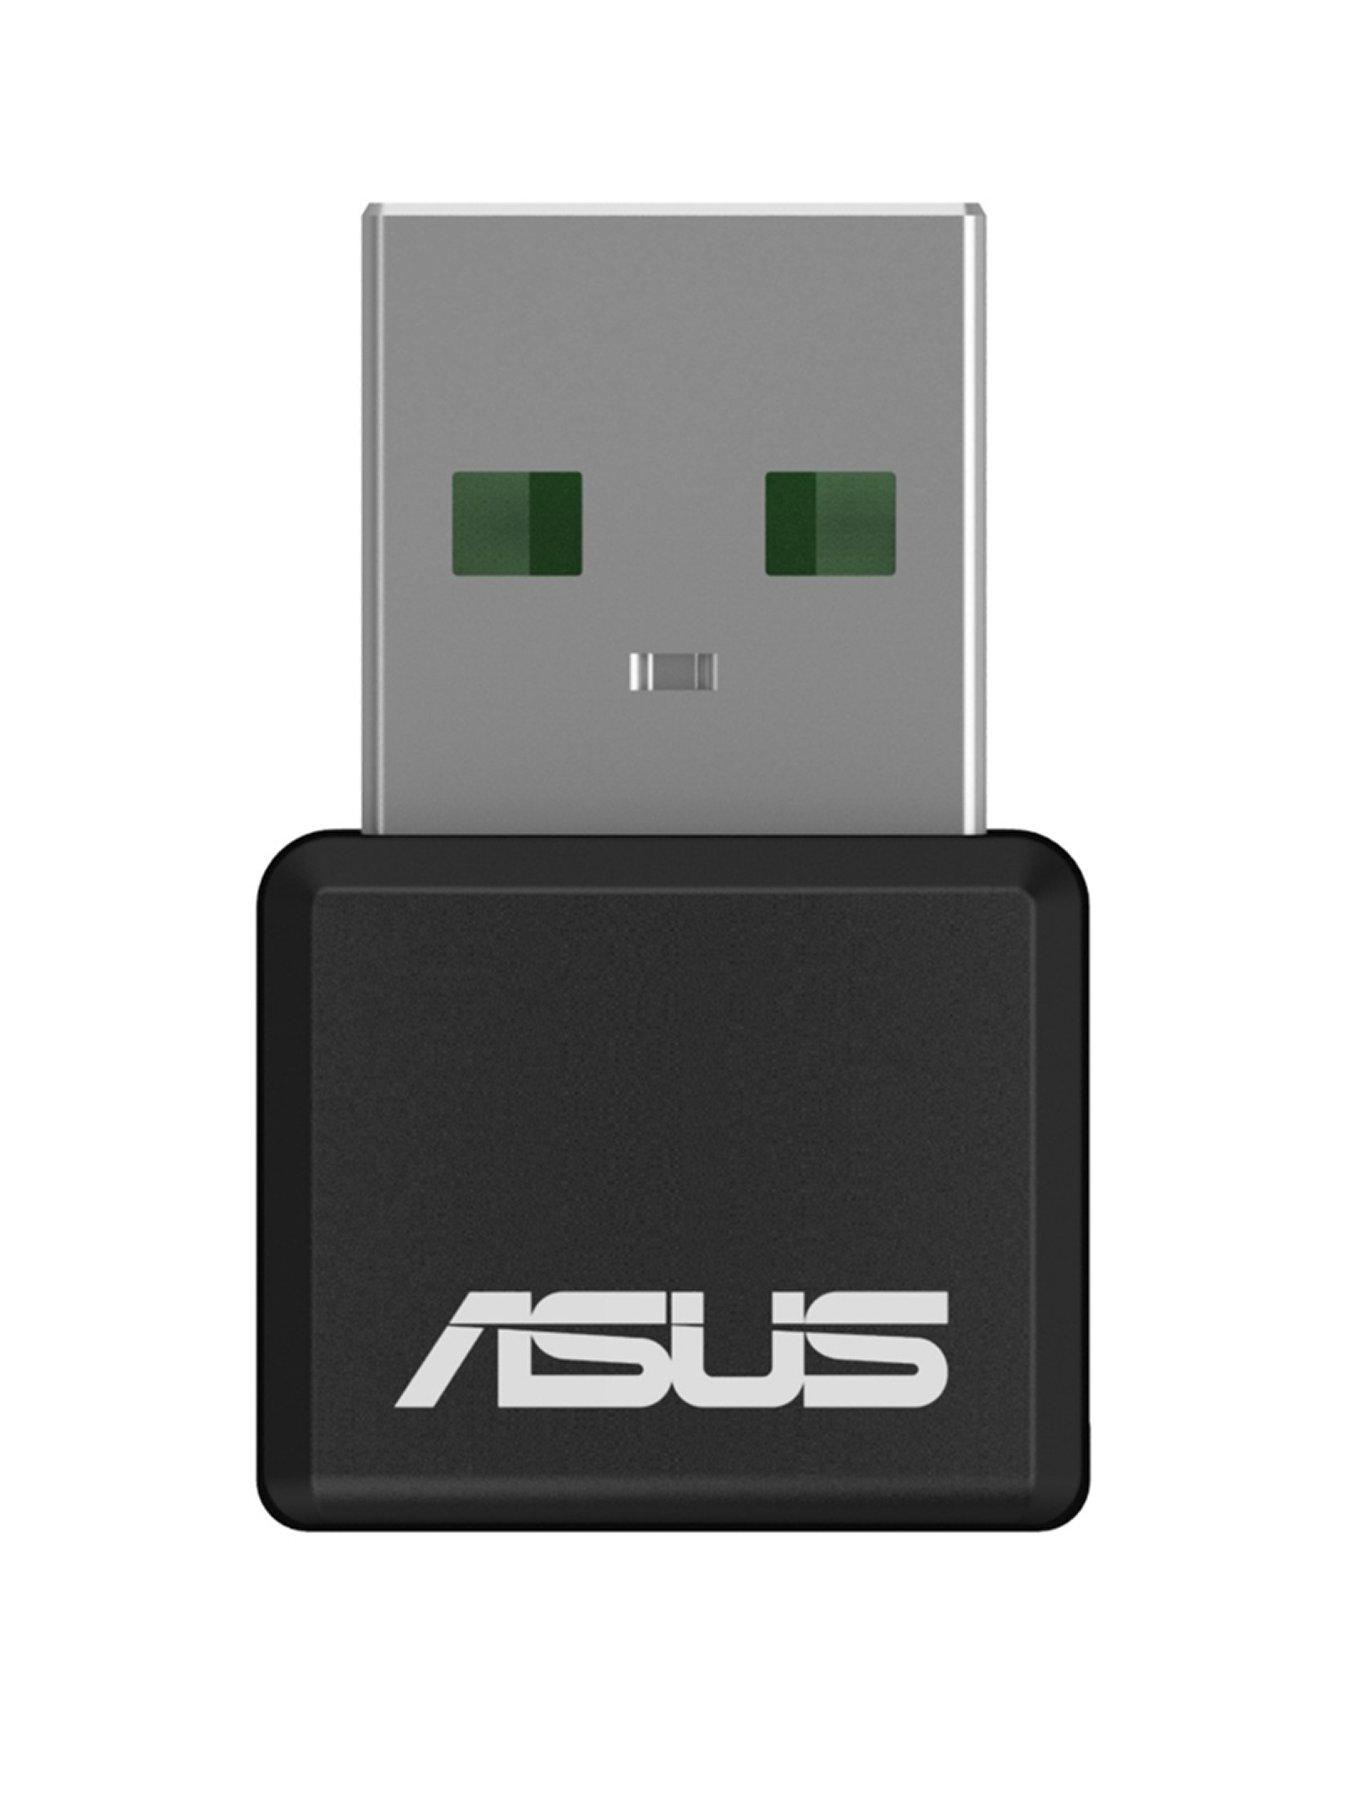 Với Asus USB-AX55 Nano, tốc độ truyền tải và kết nối internet của bạn sẽ được nâng cao lên tầm cao mới. Đây là một sản phẩm không thể thiếu đối với những người đam mê công nghệ và công việc trực tuyến.